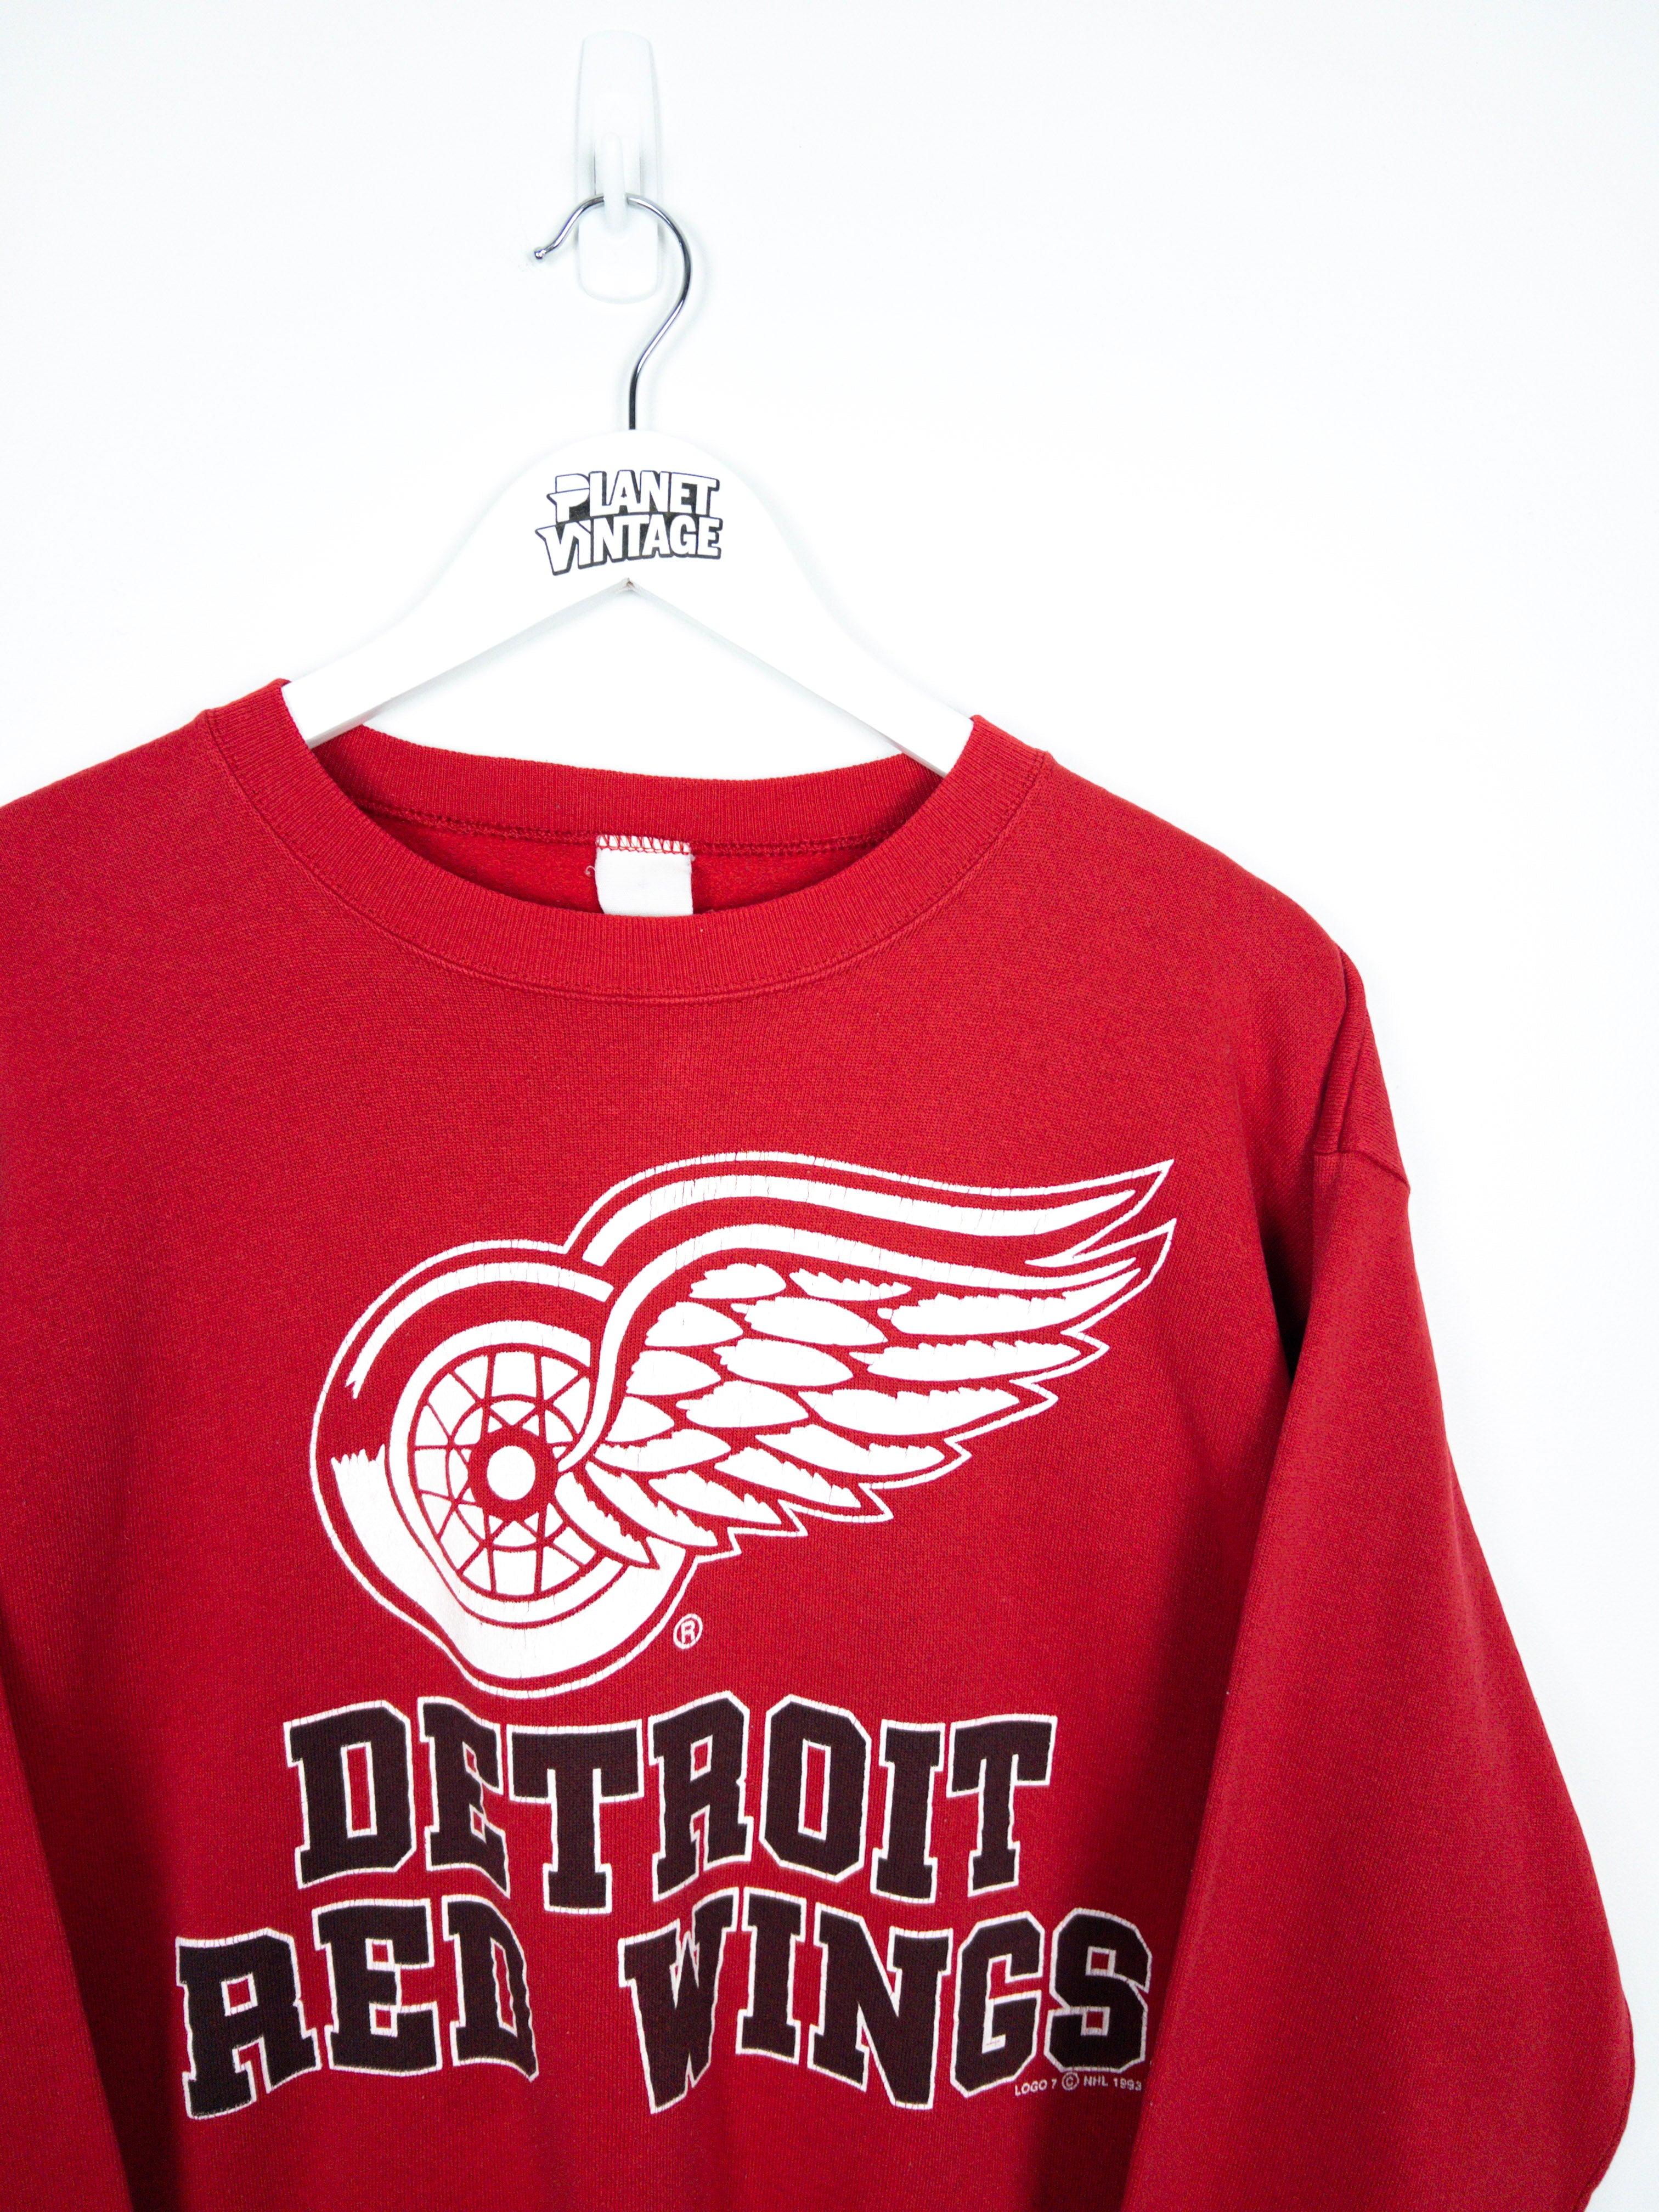 Detroit Red Wings 1993 Sweatshirt (M) - Planet Vintage Store